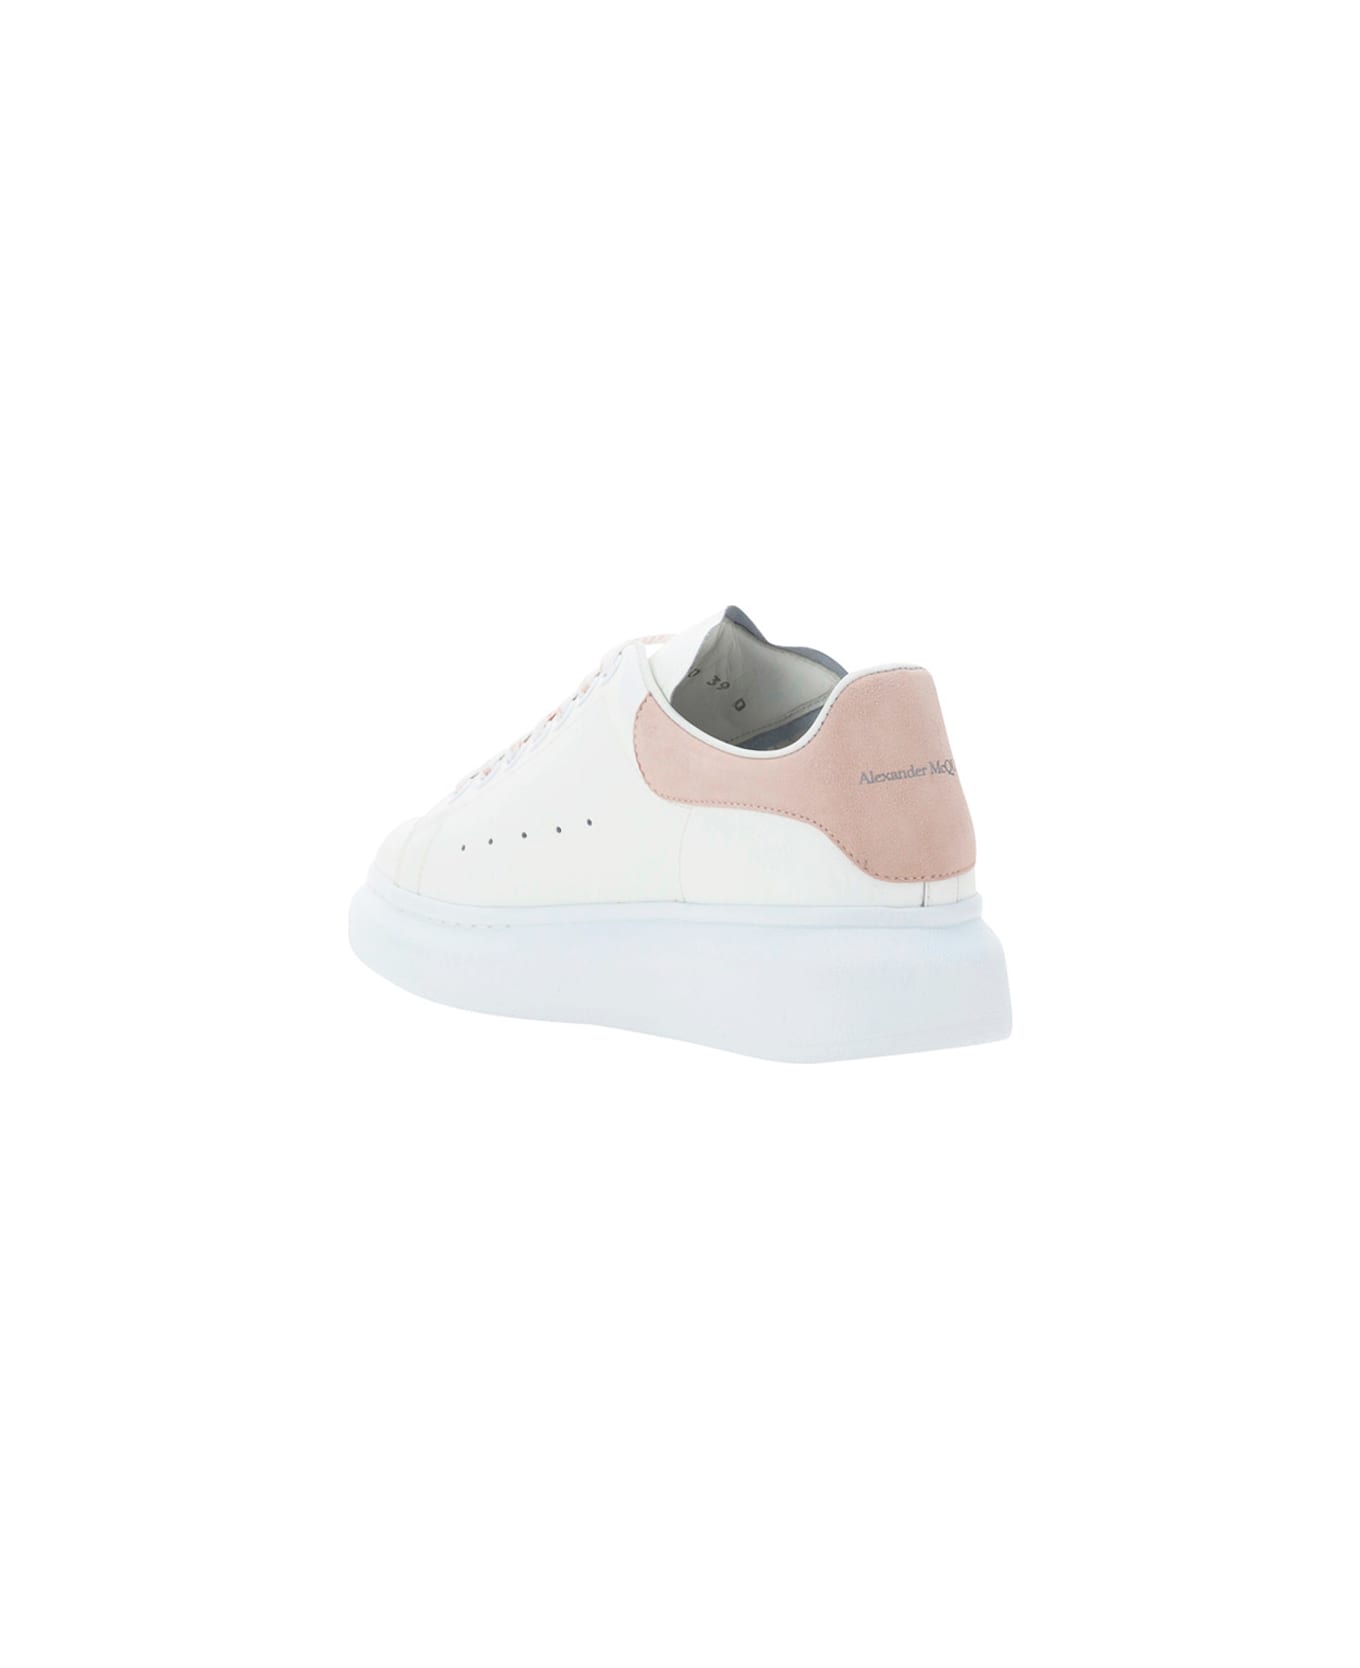 Alexander McQueen Sneakers - White/patchouli